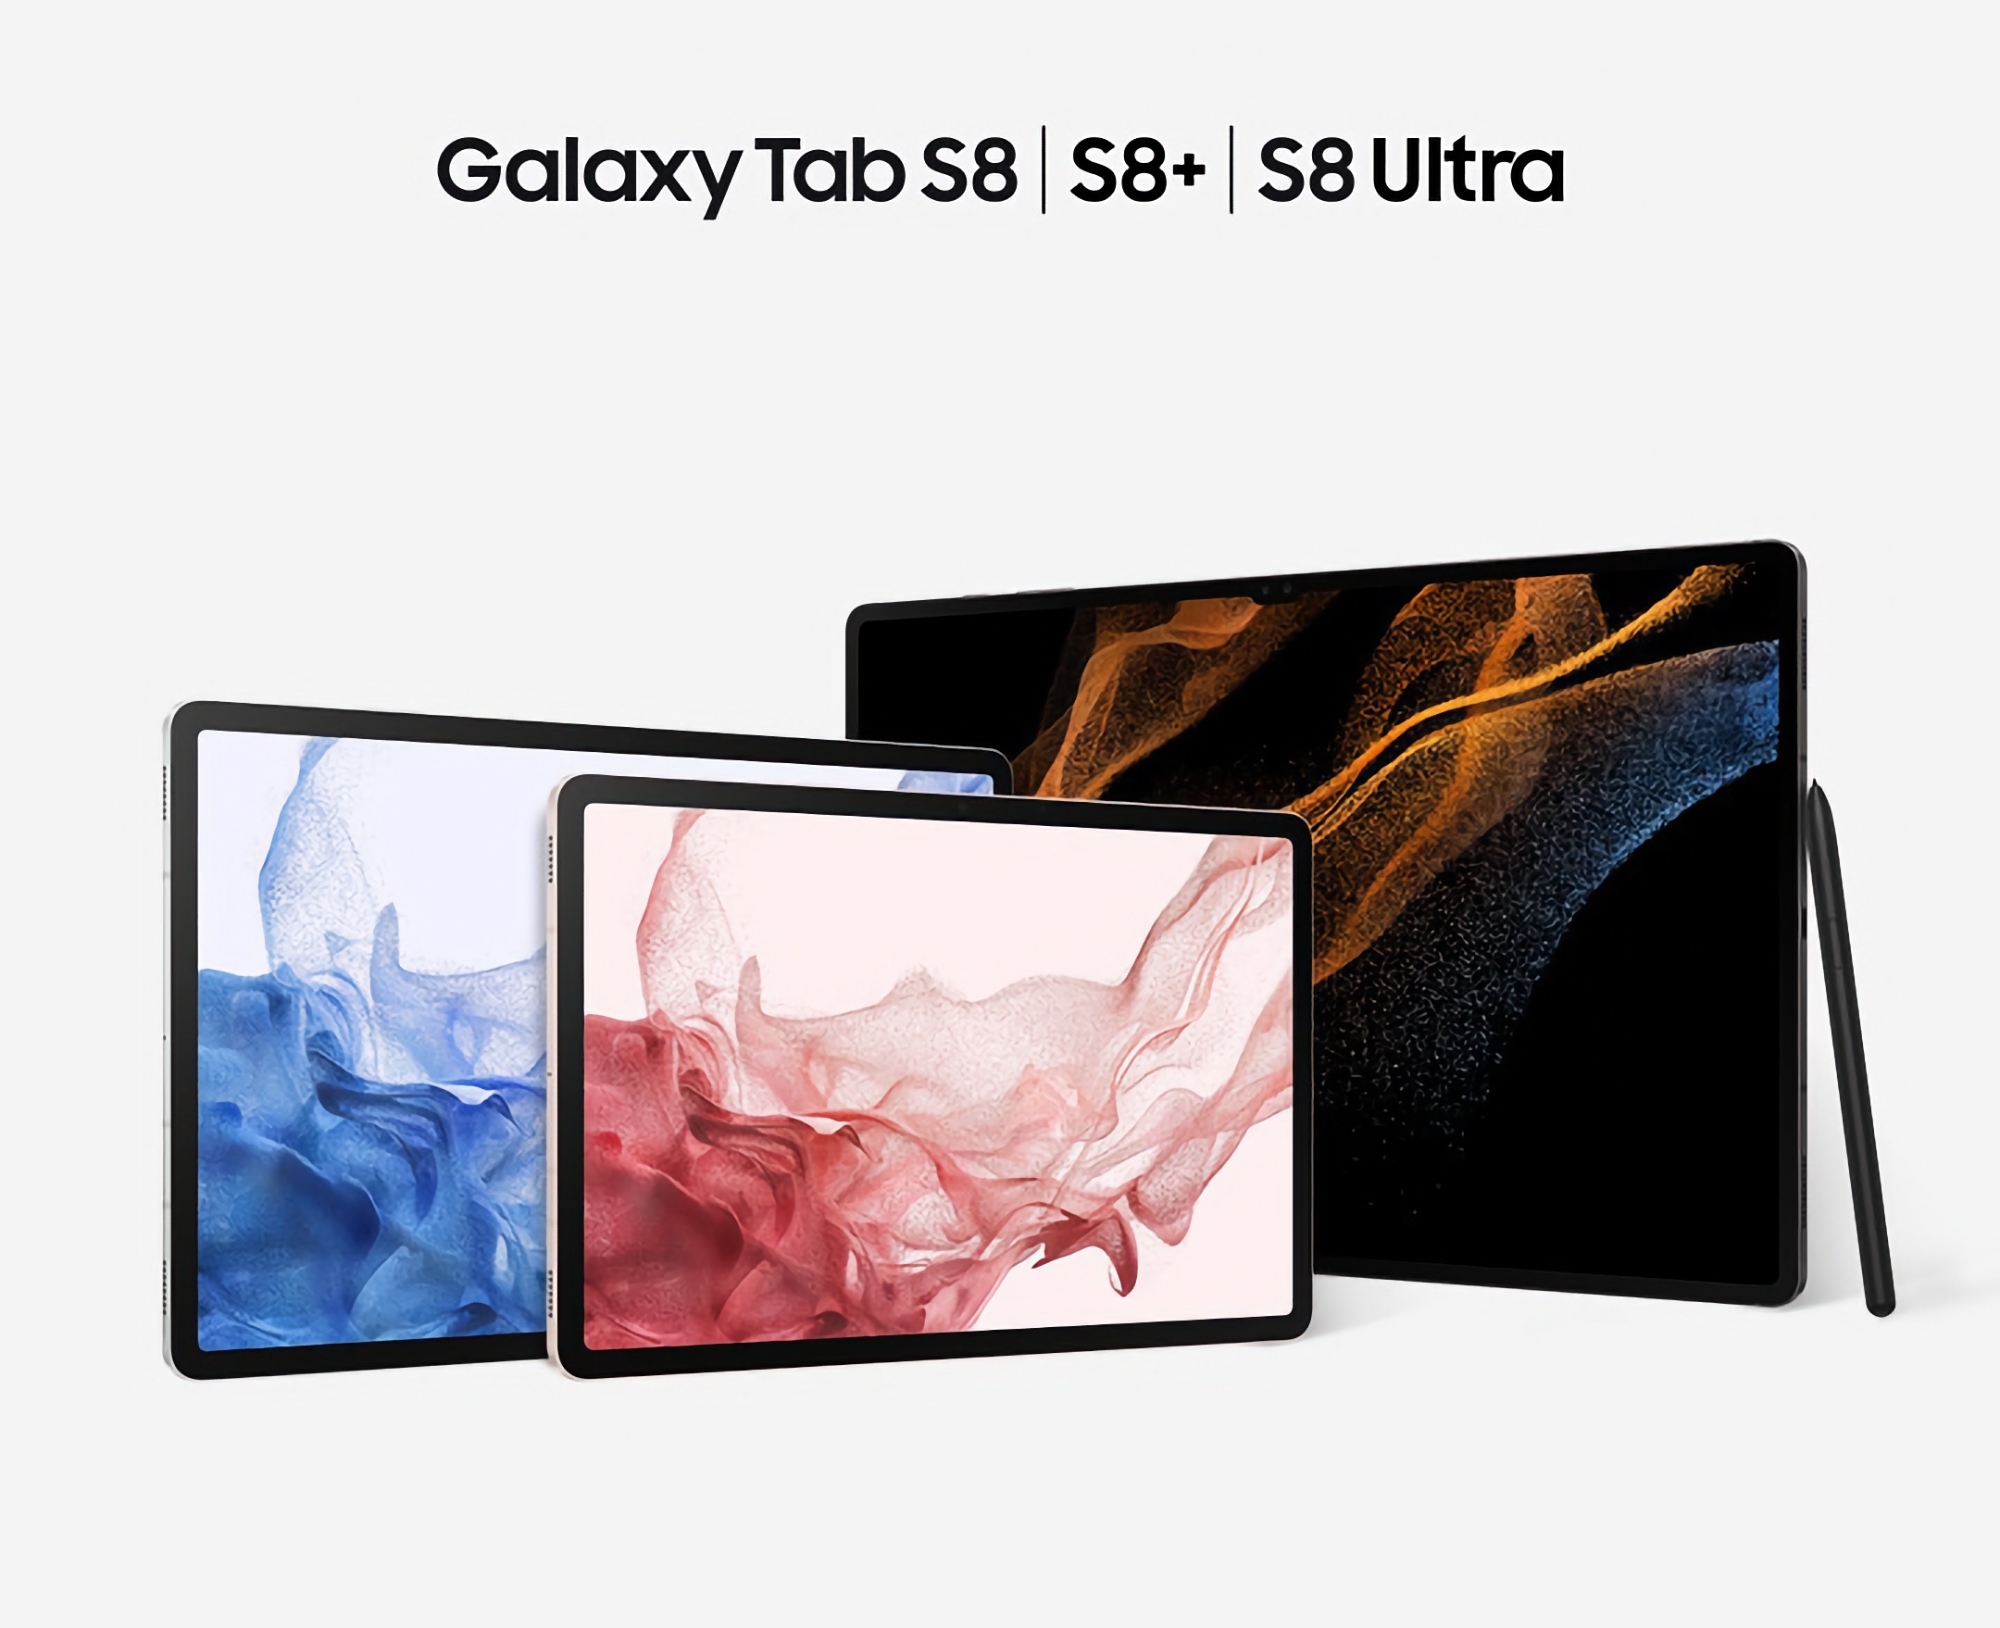 Samsung випустила оновлення для Galaxy Tab S8, Galaxy Tab S8+ і Galaxy Tab S8 Ultra: що нового